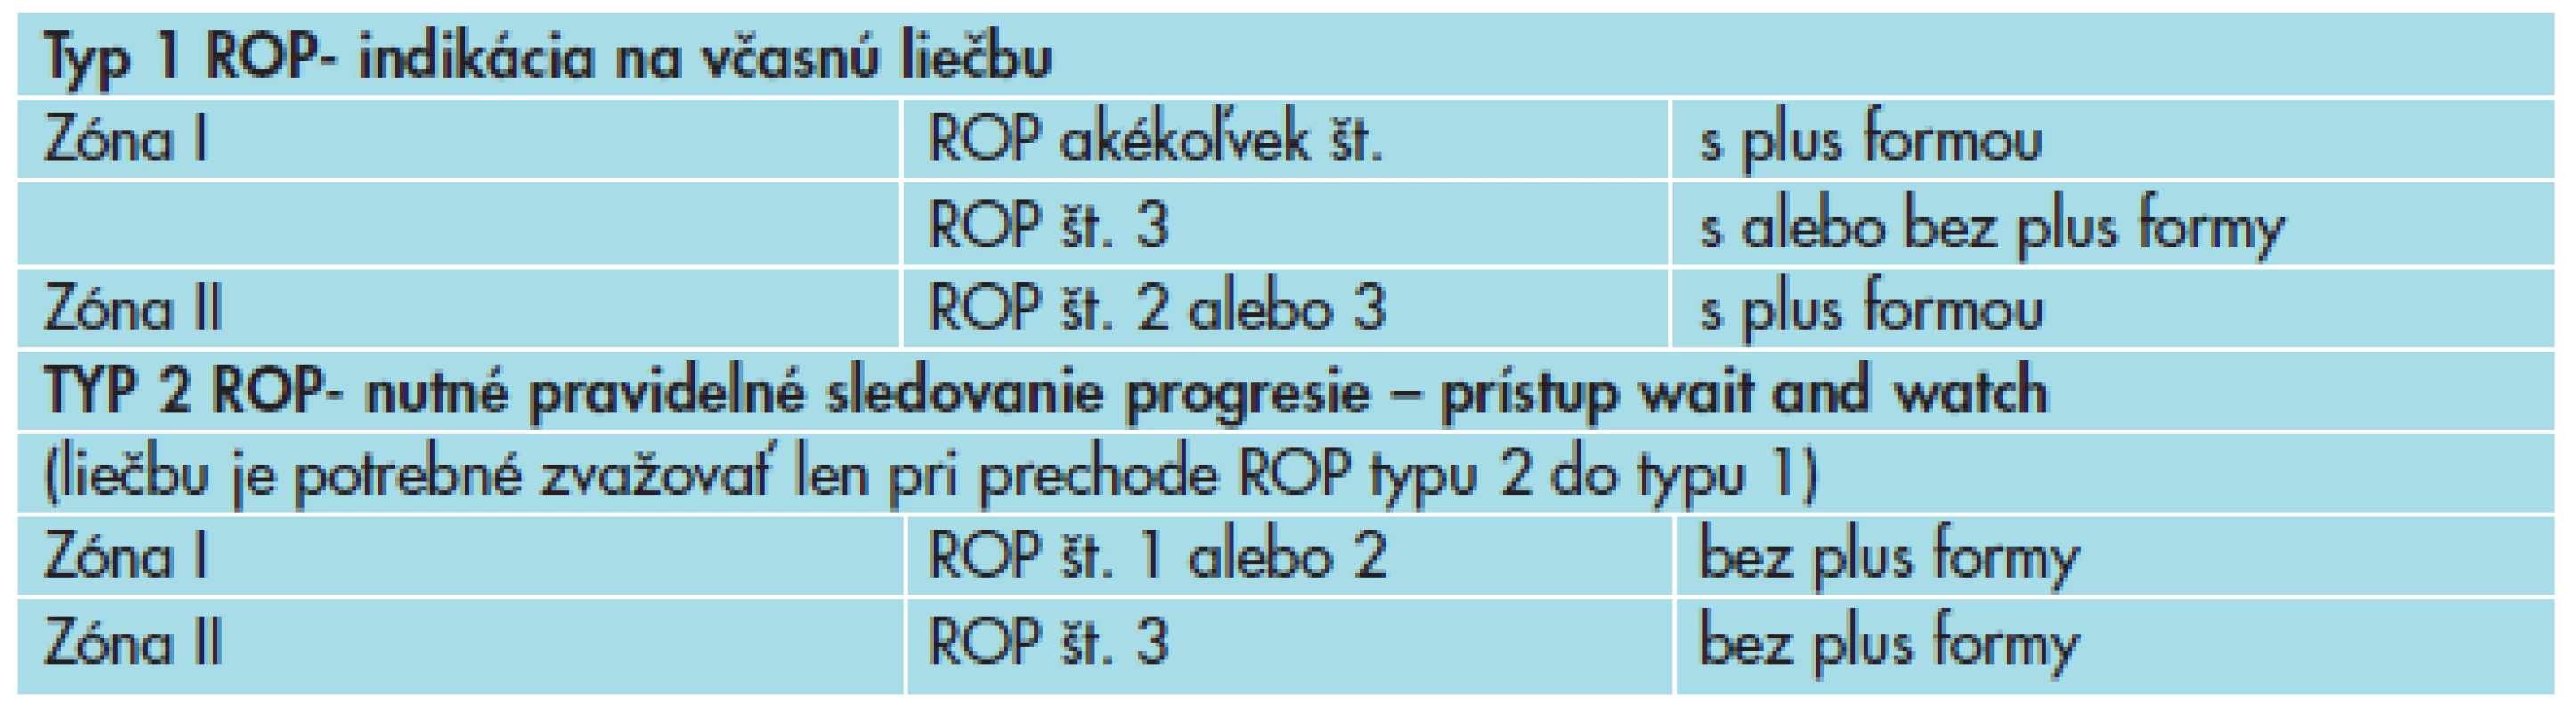 Rozdelenie predprahového štádia ROP podľa ETROP – prístup k liečbe.